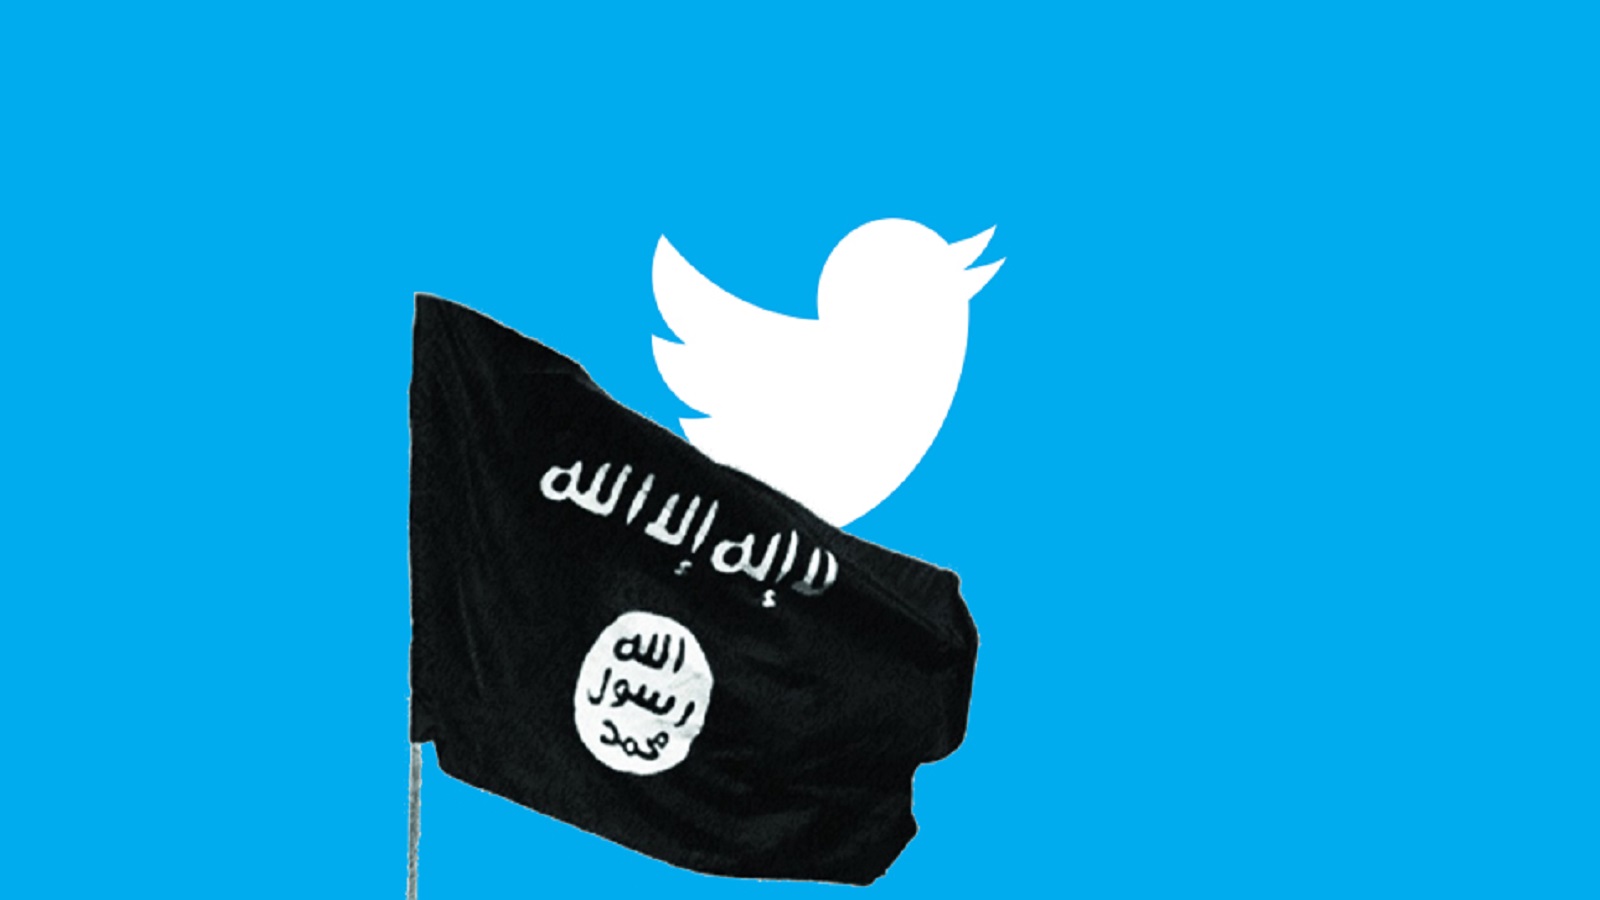 جهاديون يملأون فراغ "داعش" في "تويتر"